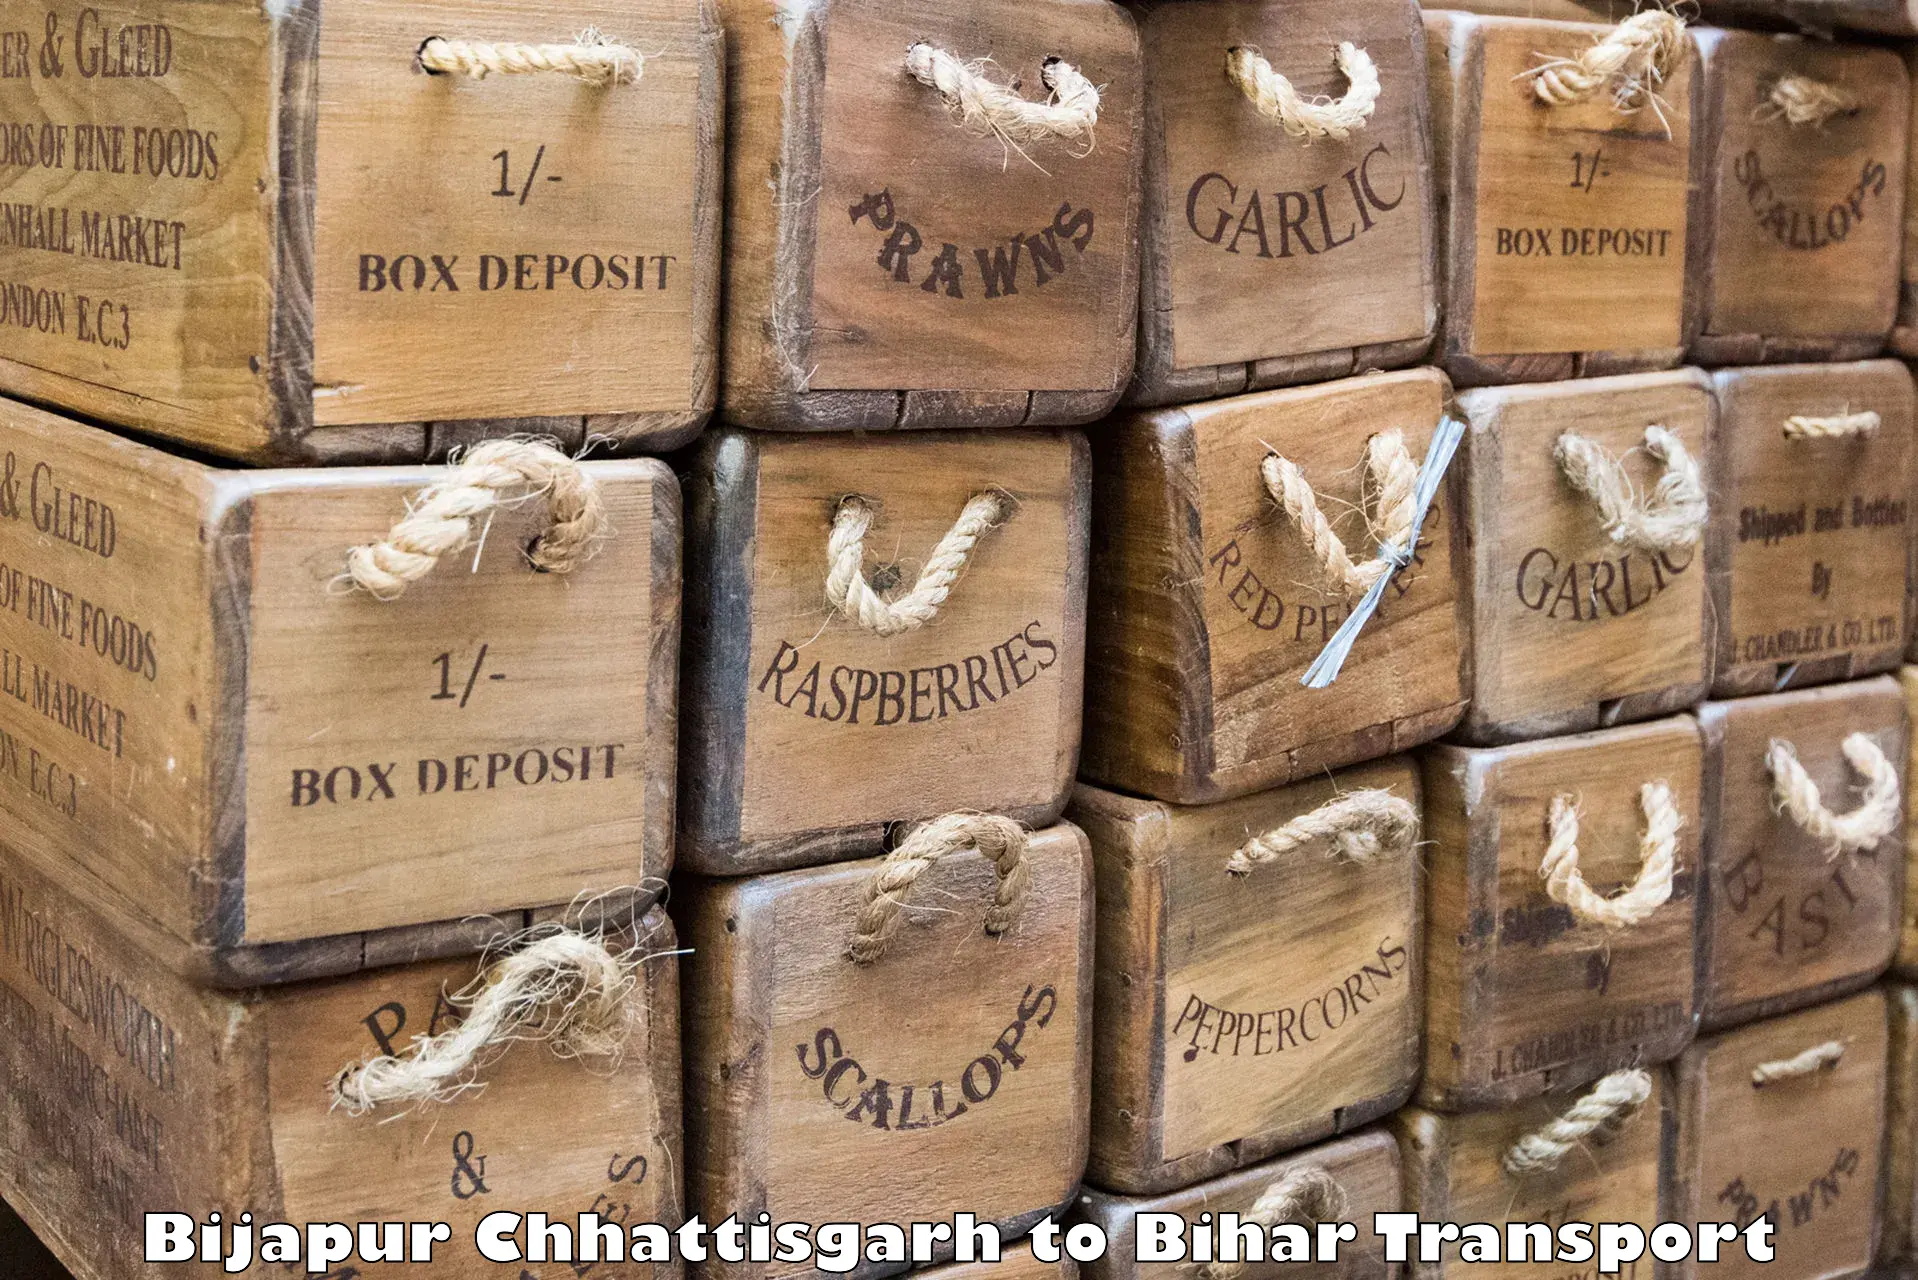 Air freight transport services Bijapur Chhattisgarh to Parsauni